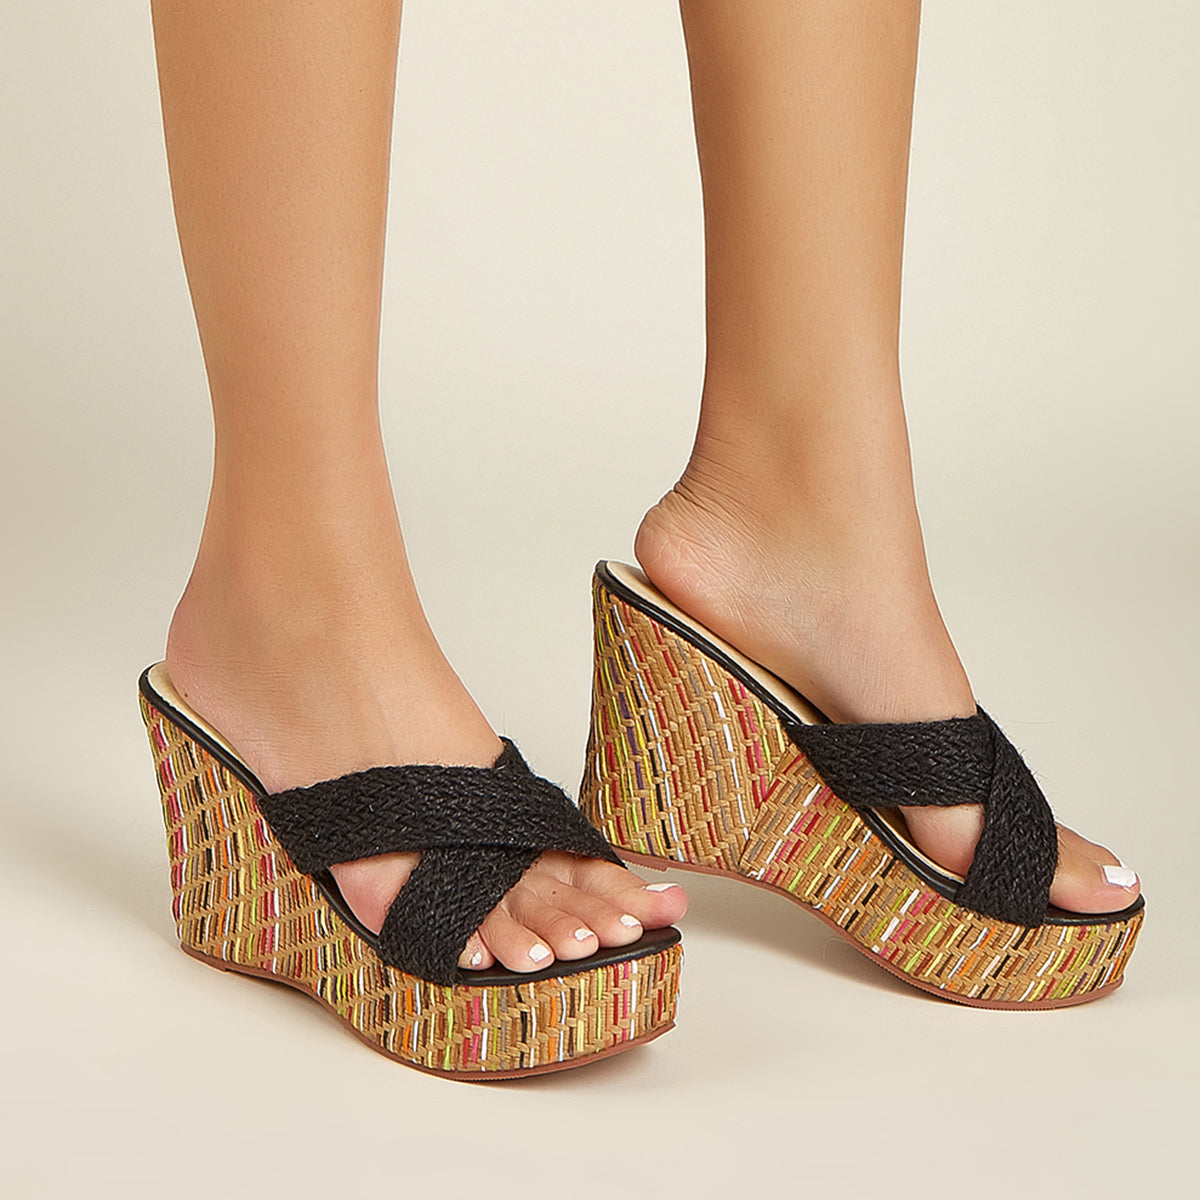 Wedge Sandals for Women Casual Summer Slide Platform Sandals